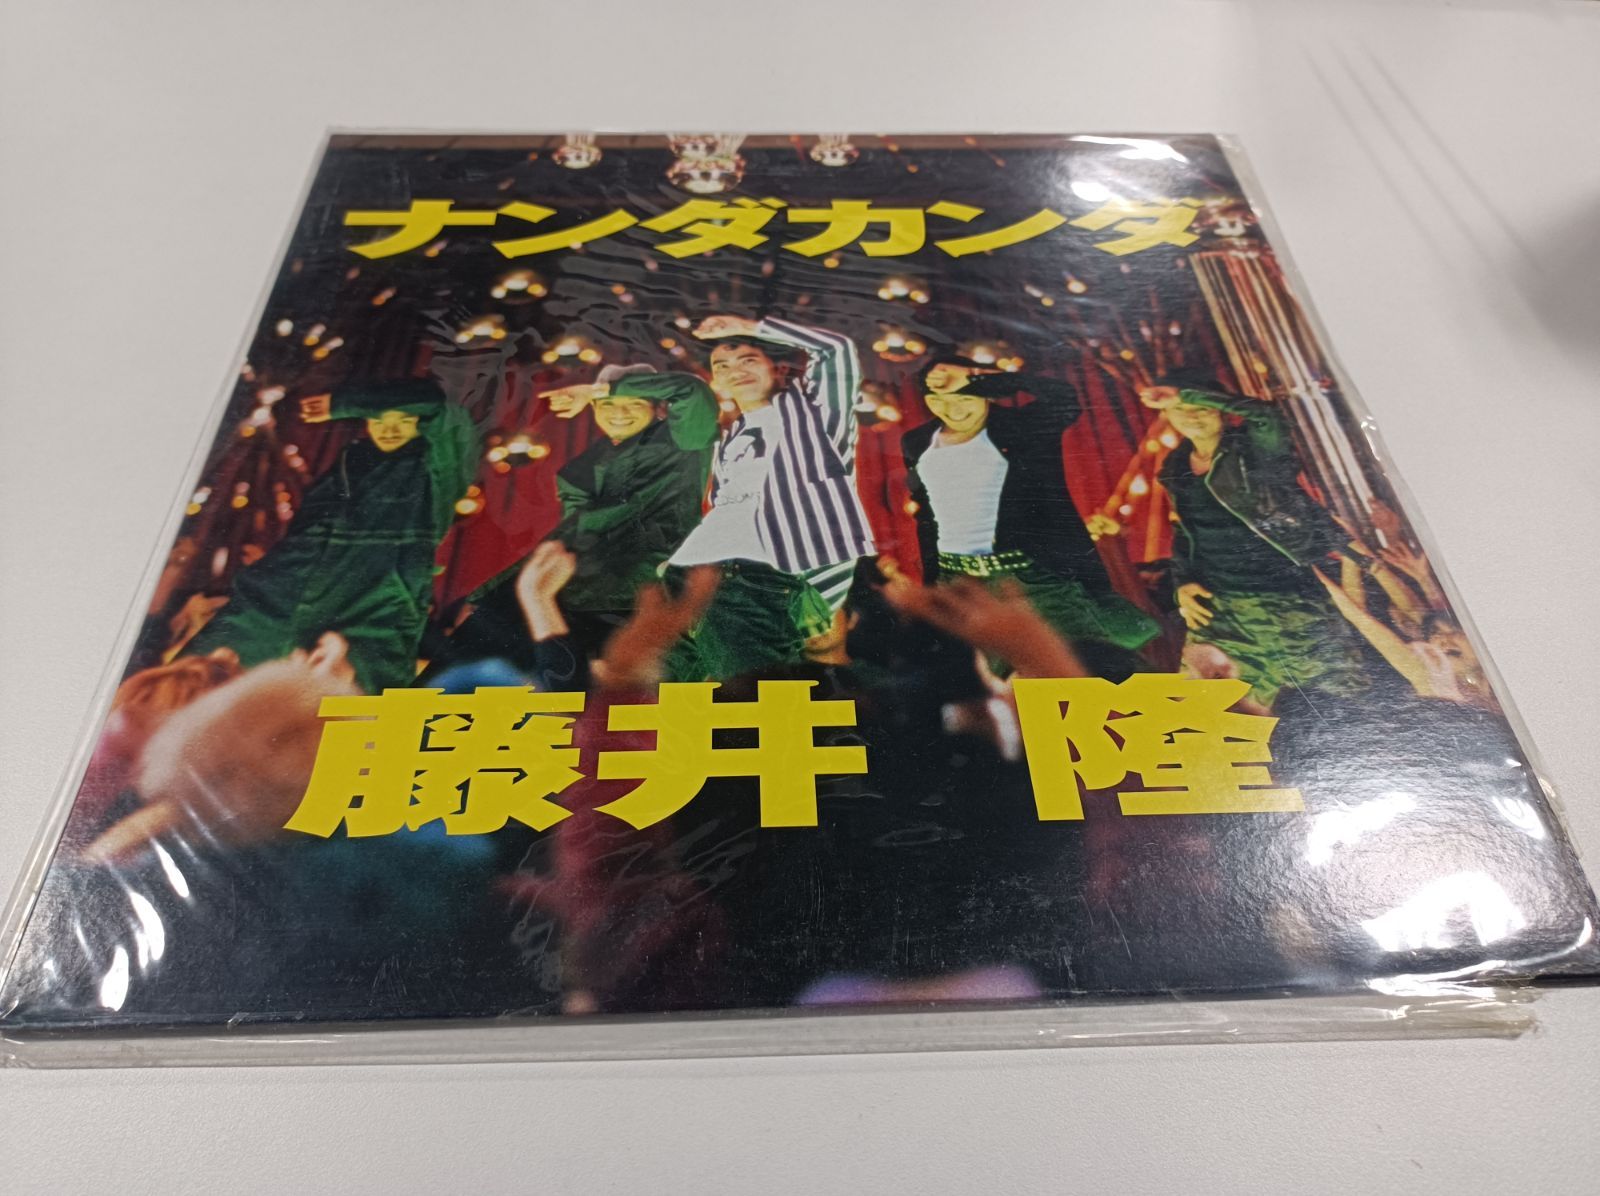 藤井隆 ナンダカンダ 7inchレコード